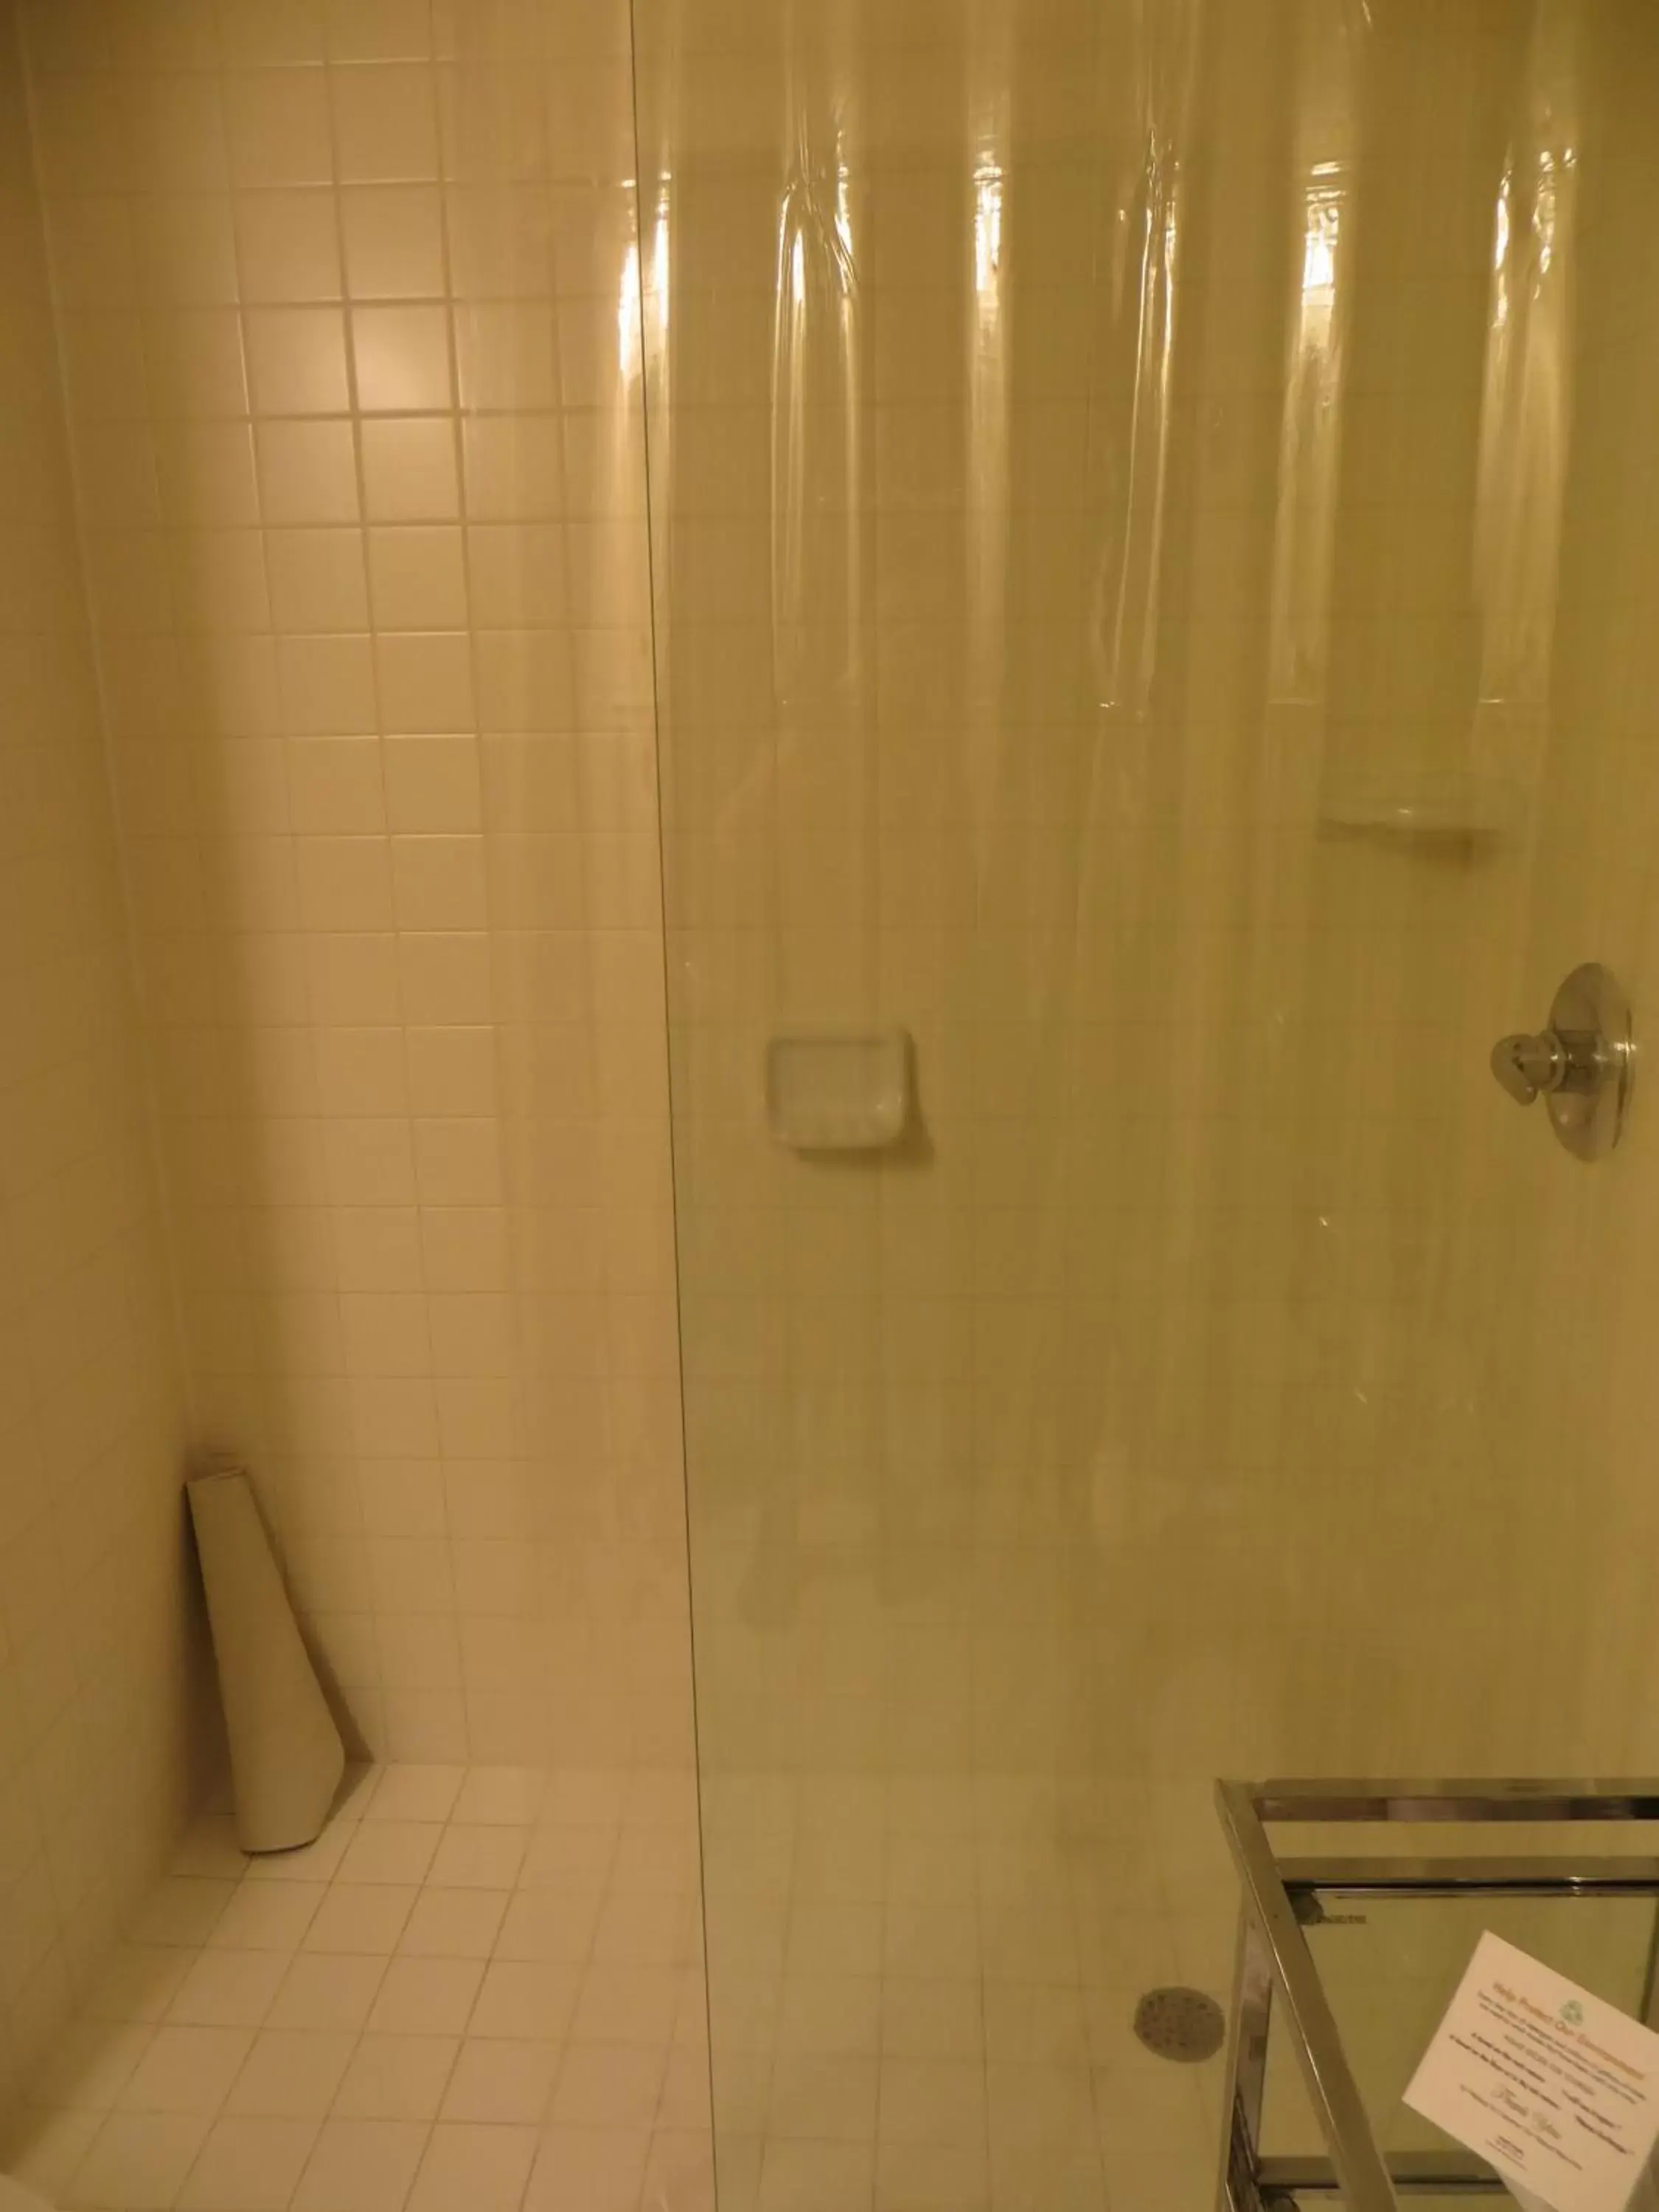 Bathroom in Mark Twain Hotel